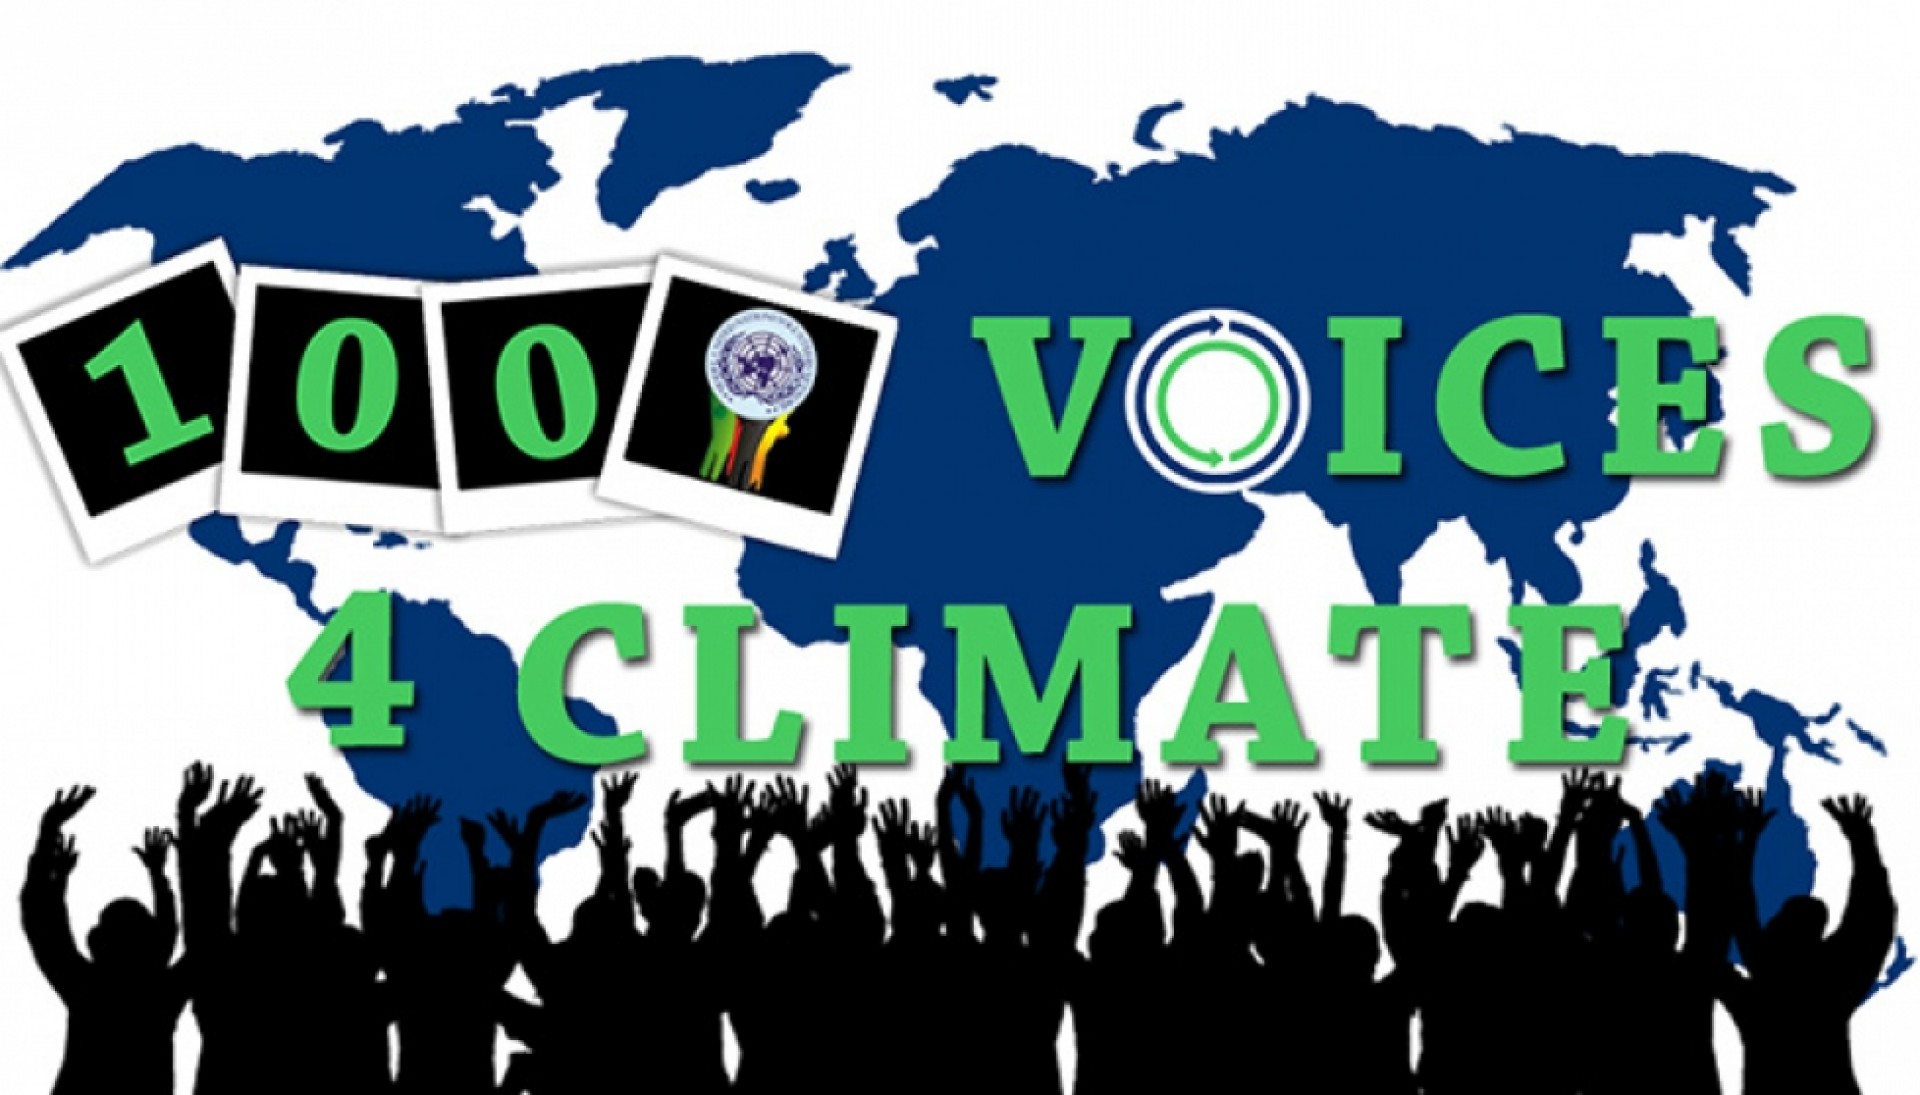 Tham Gia Cuộc Thi Ảnh “#1000Voices4Climate” 2015 Giành Giải Thưởng 300 USD